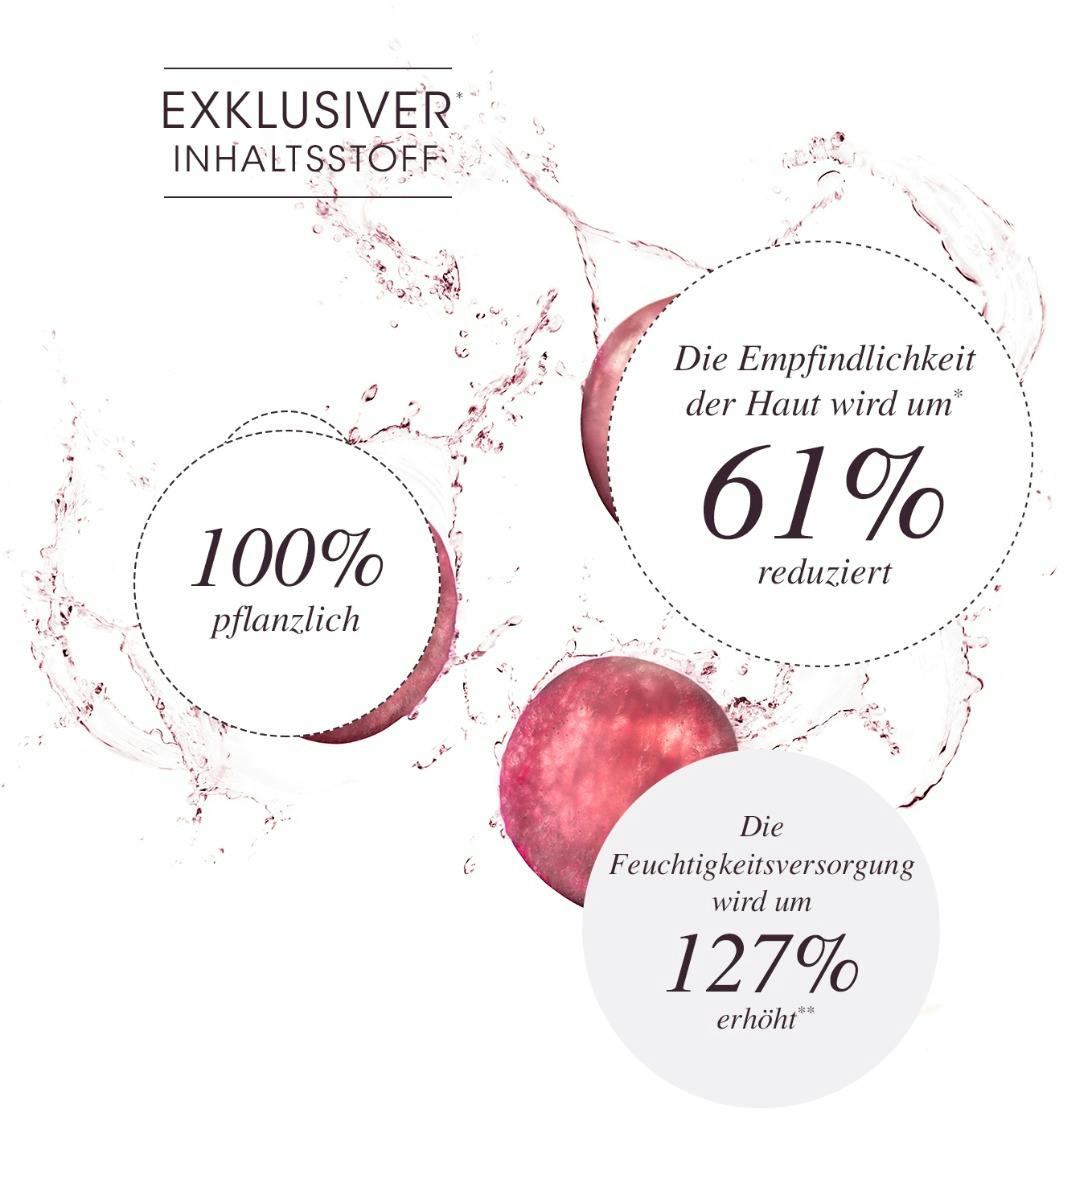 Weintraubenwasser - Eine bewiesene Wirksamkeit